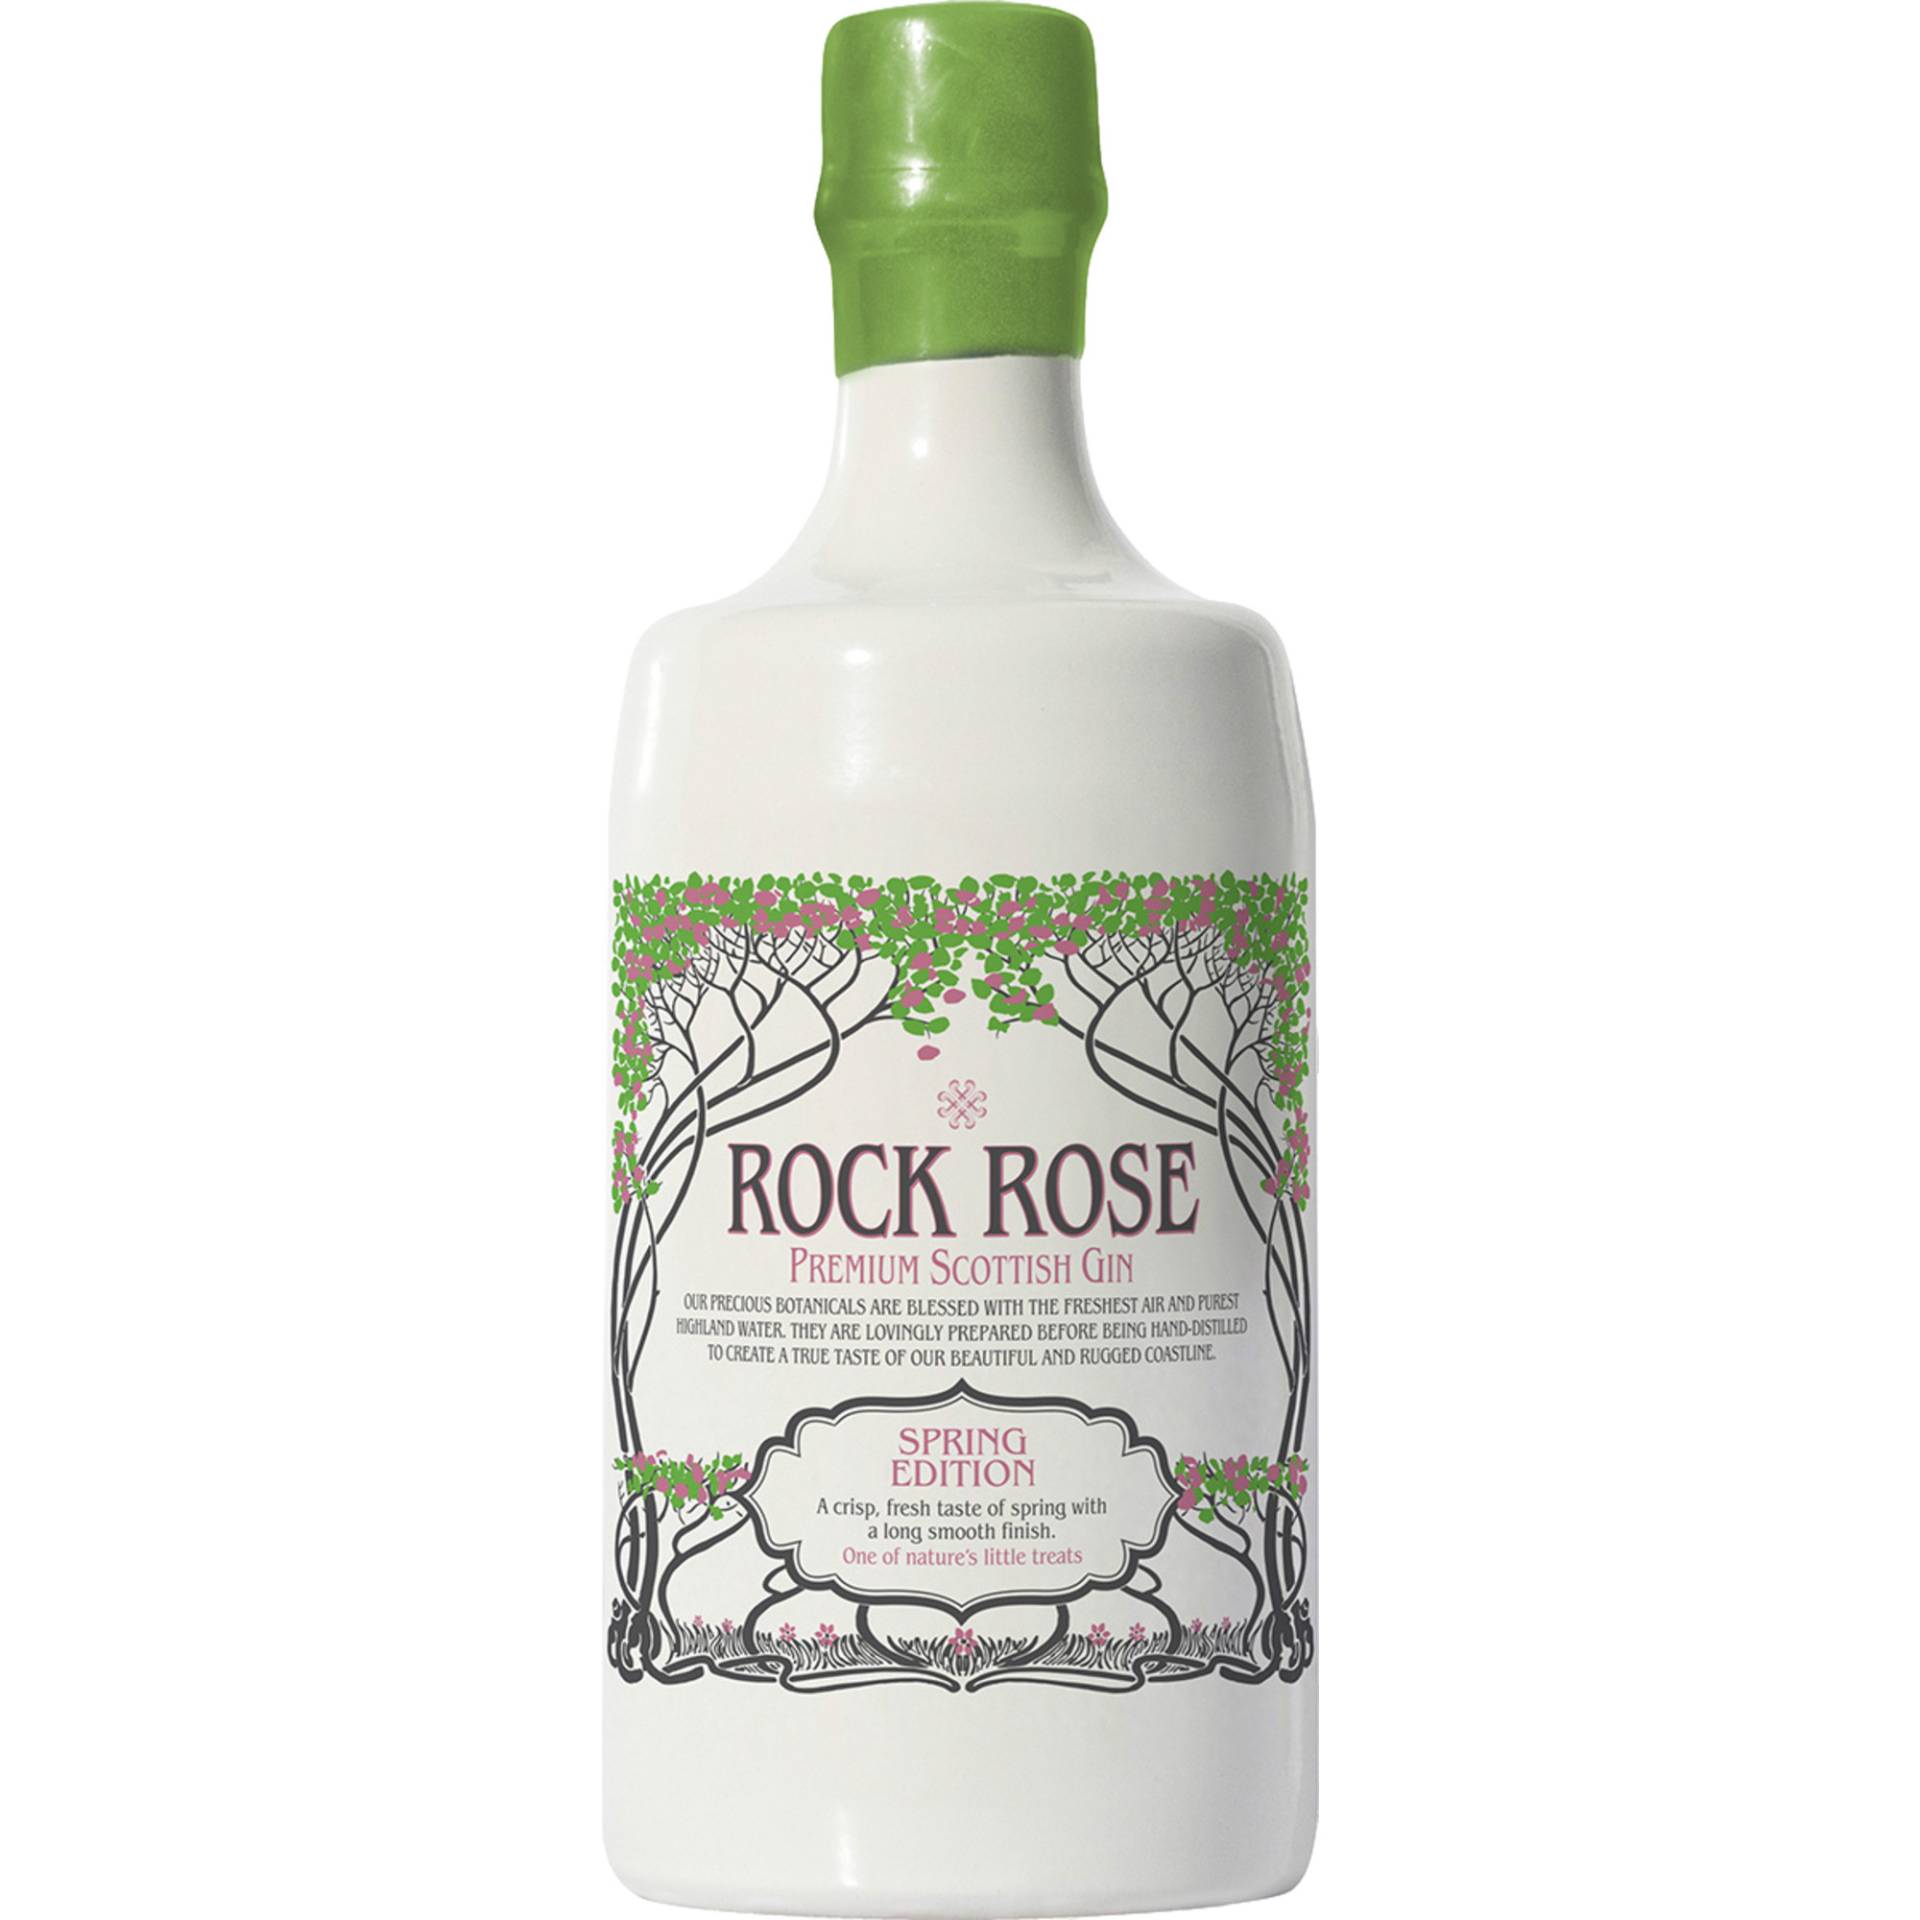 Rock Rose Premium Scottish Gin, Spring Edition, 41,5%, 0,7 L, Schottland, Spirituosen von Dunnet Bay Distillers Ltd. ,   GB KW14 8YD Thurso